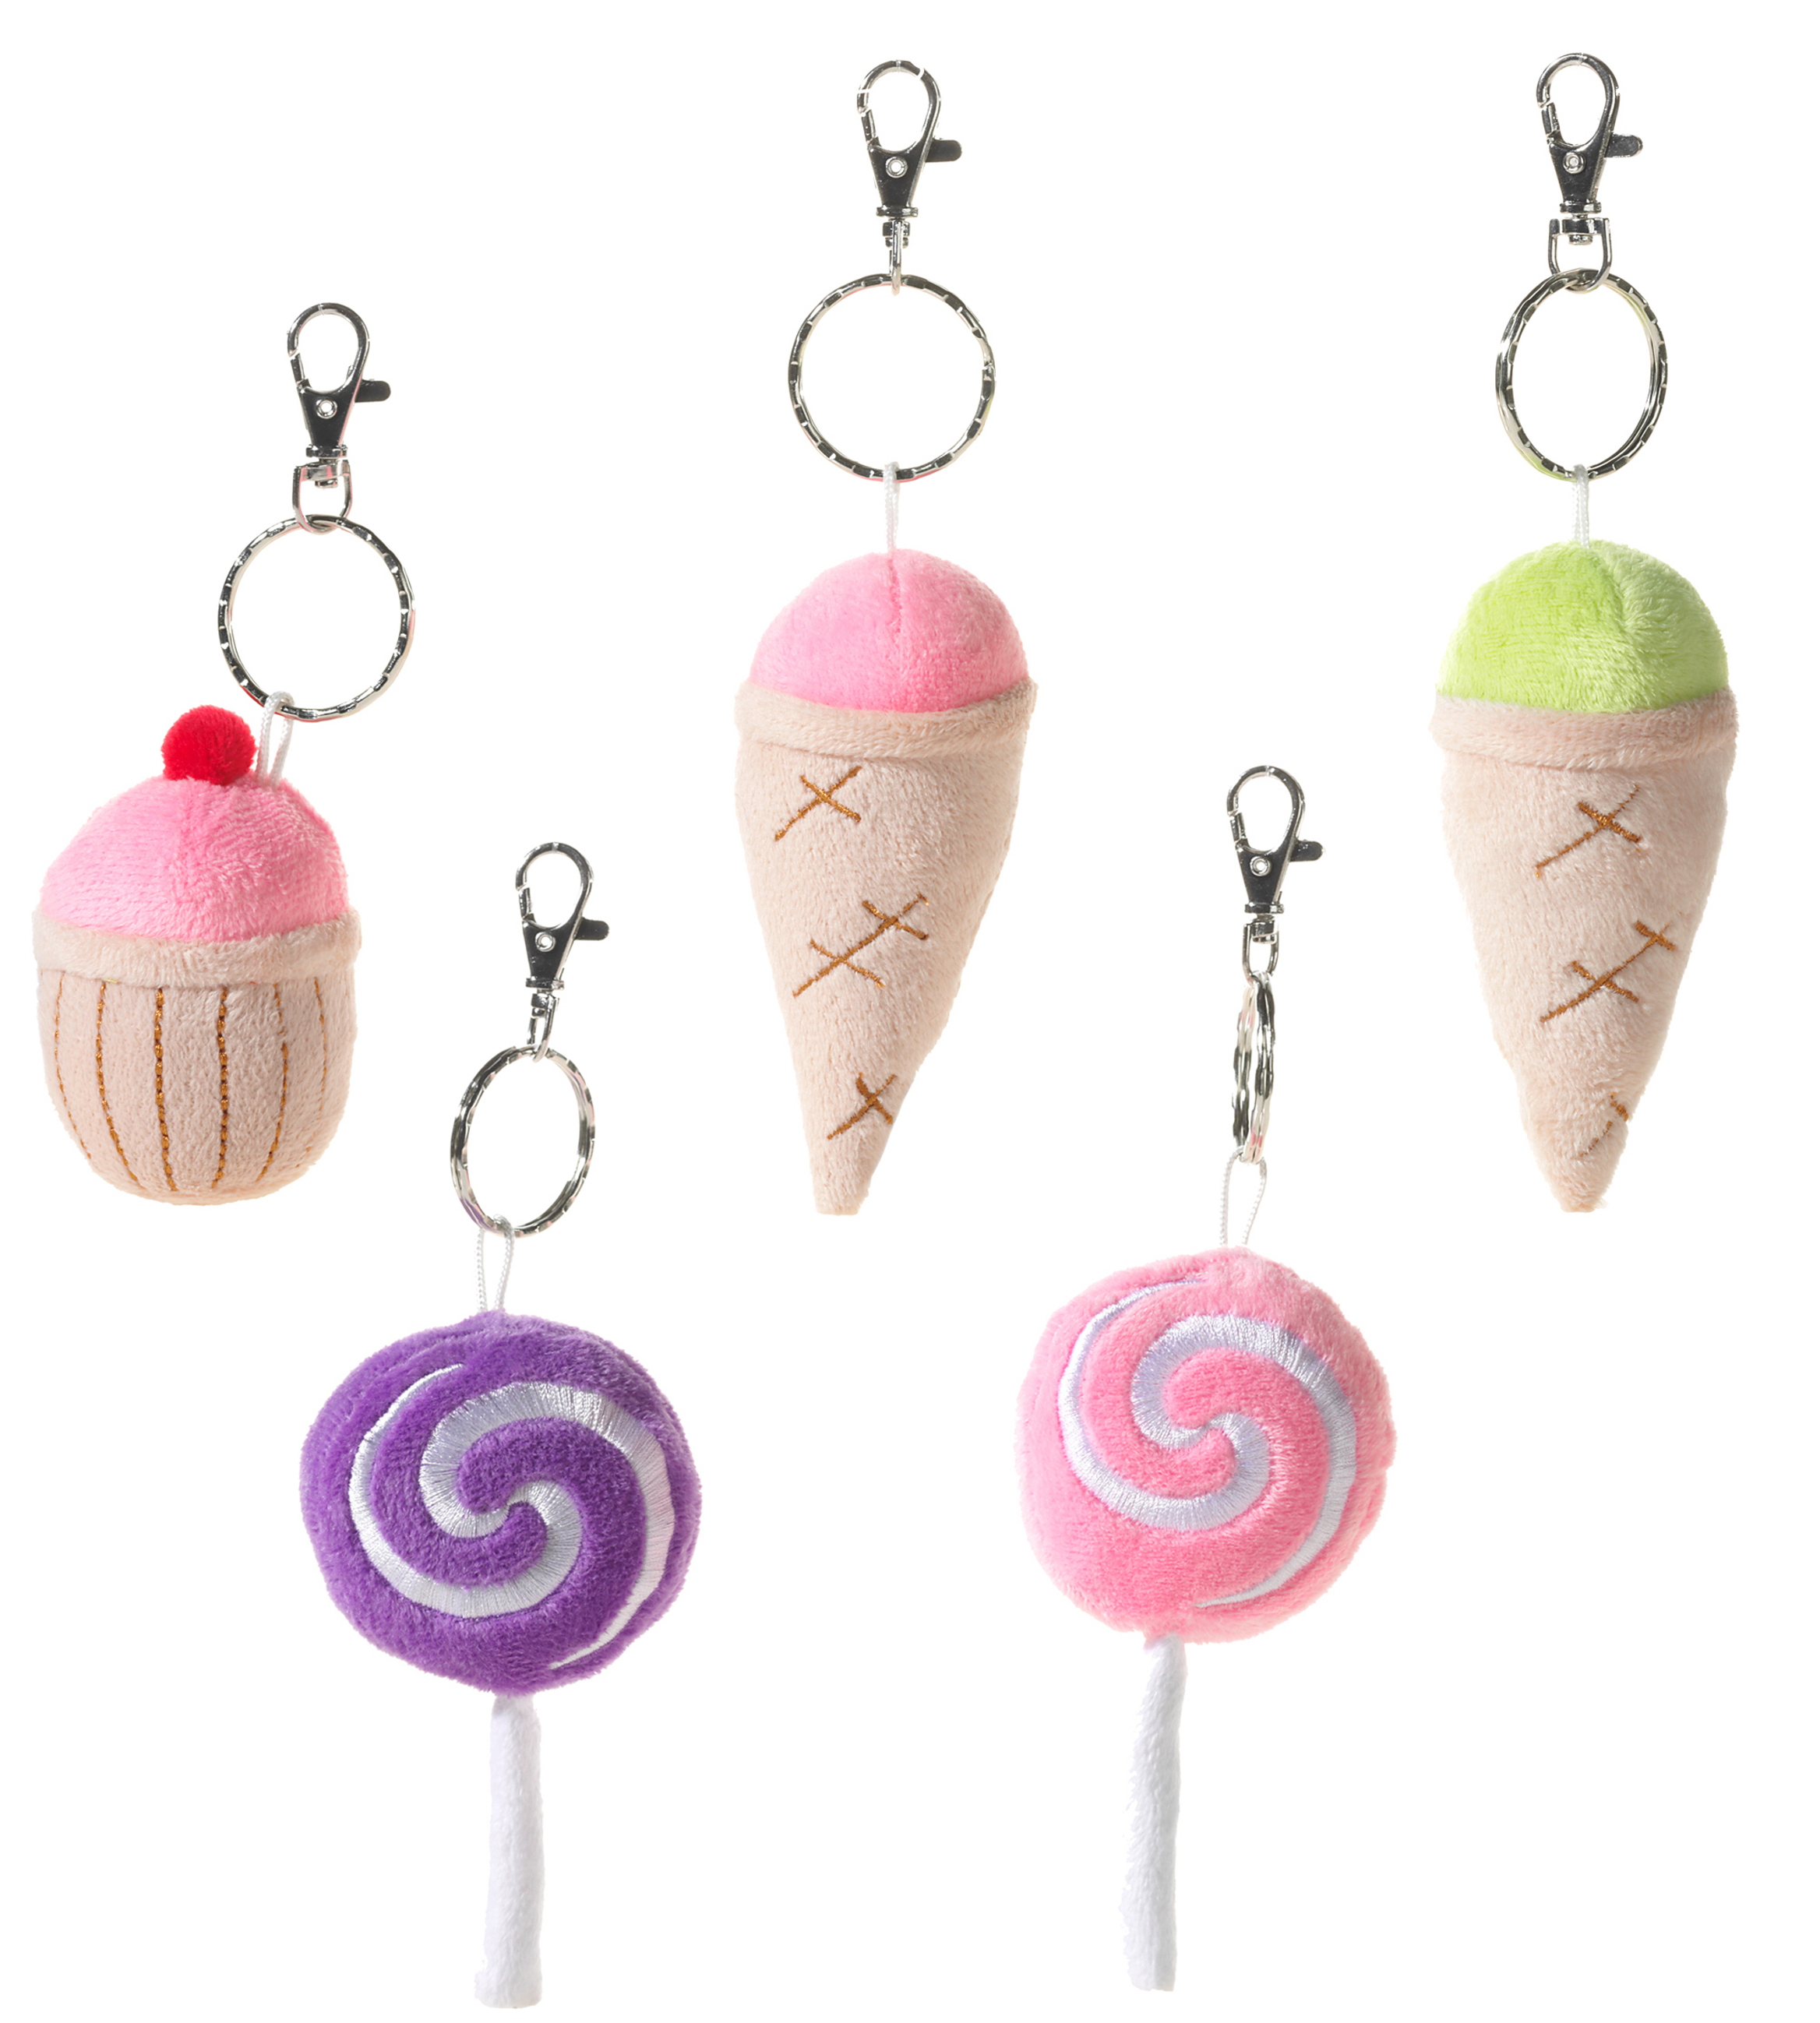 Heunec Schulanfang Lollis, Eiscreme und Cupcake Schlüsselanhänger in der 7cm Ausführung